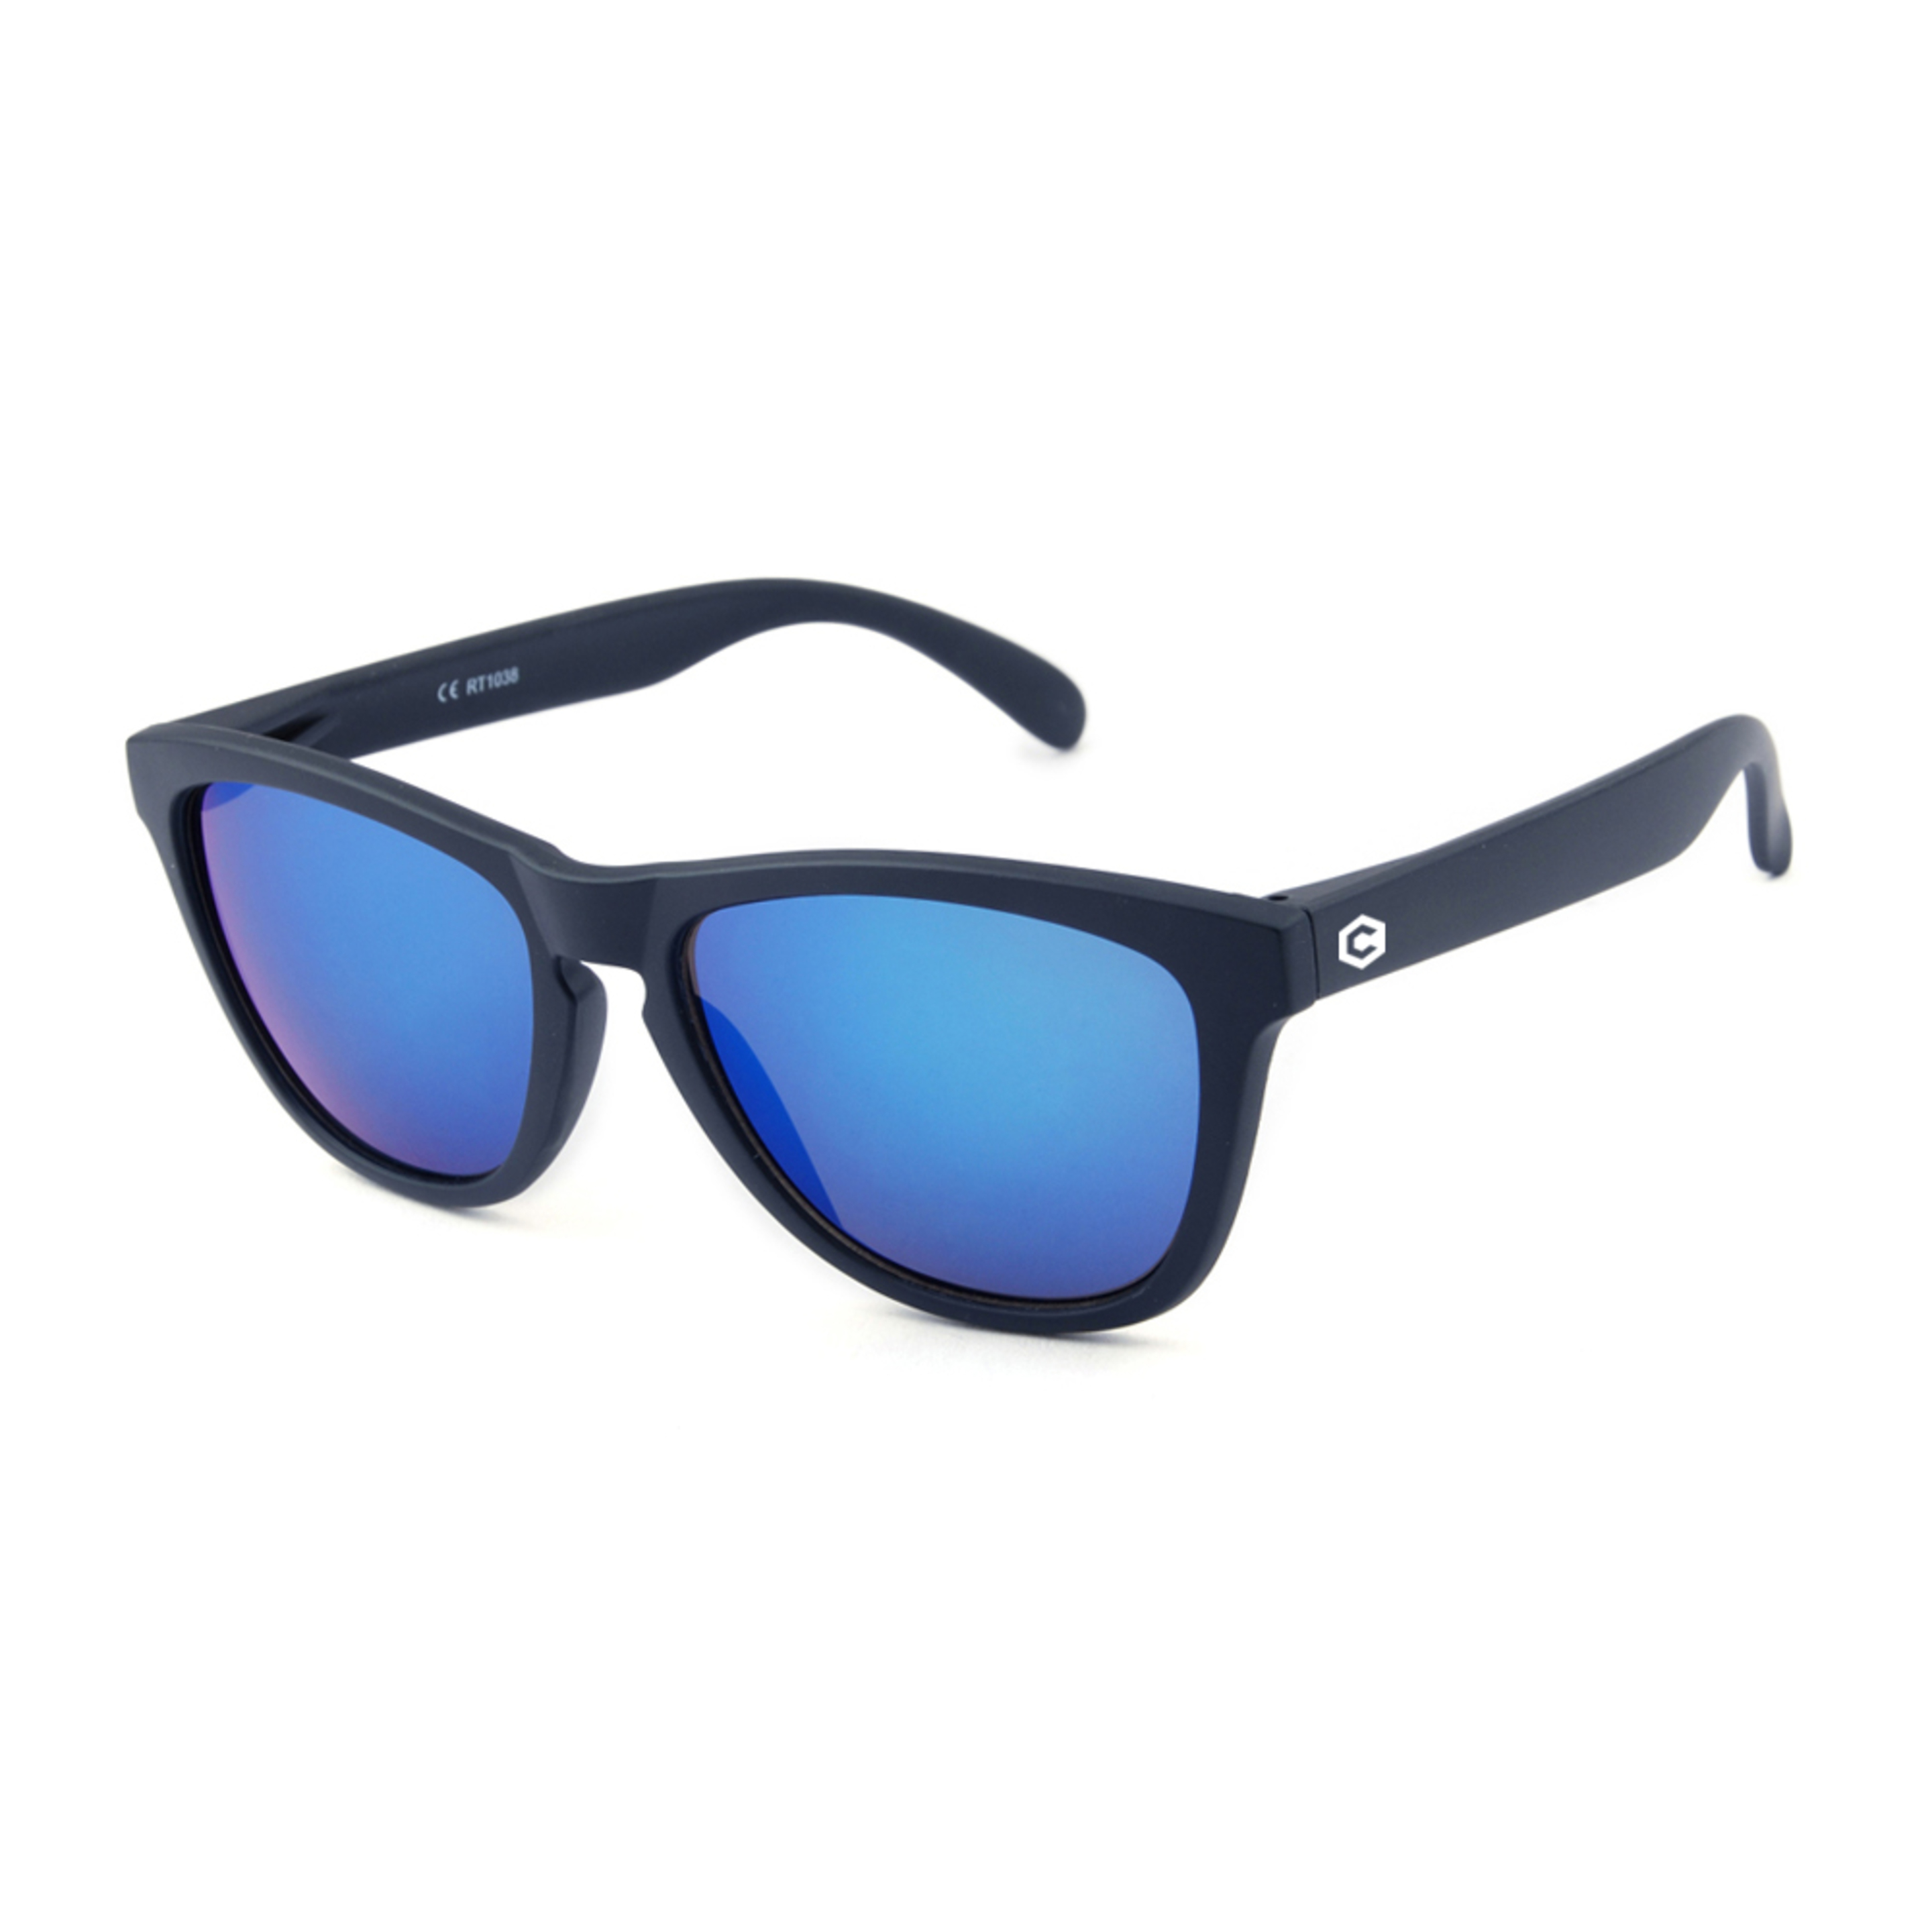 Gafas De Sol Sexton Original - Azul Claro/Azul Oscuro - Cuadrada  MKP